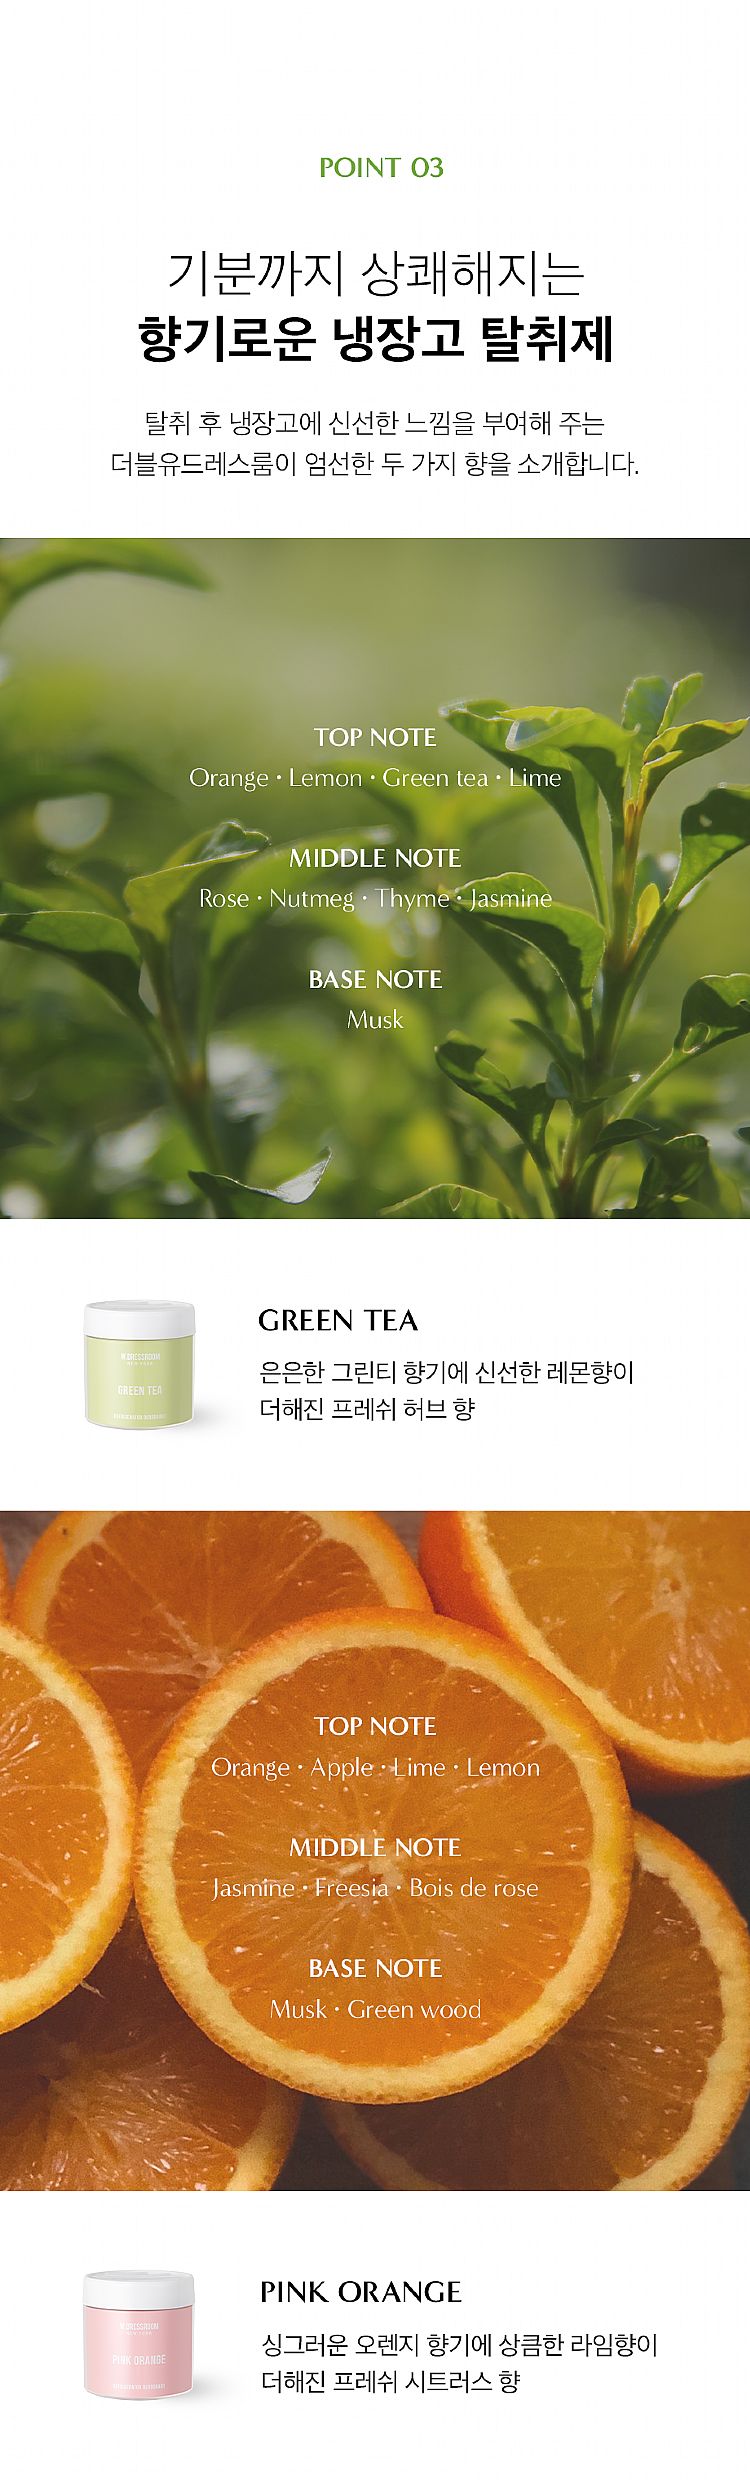 韓國 綠茶 韓國 柑橘 冰箱 除臭劑